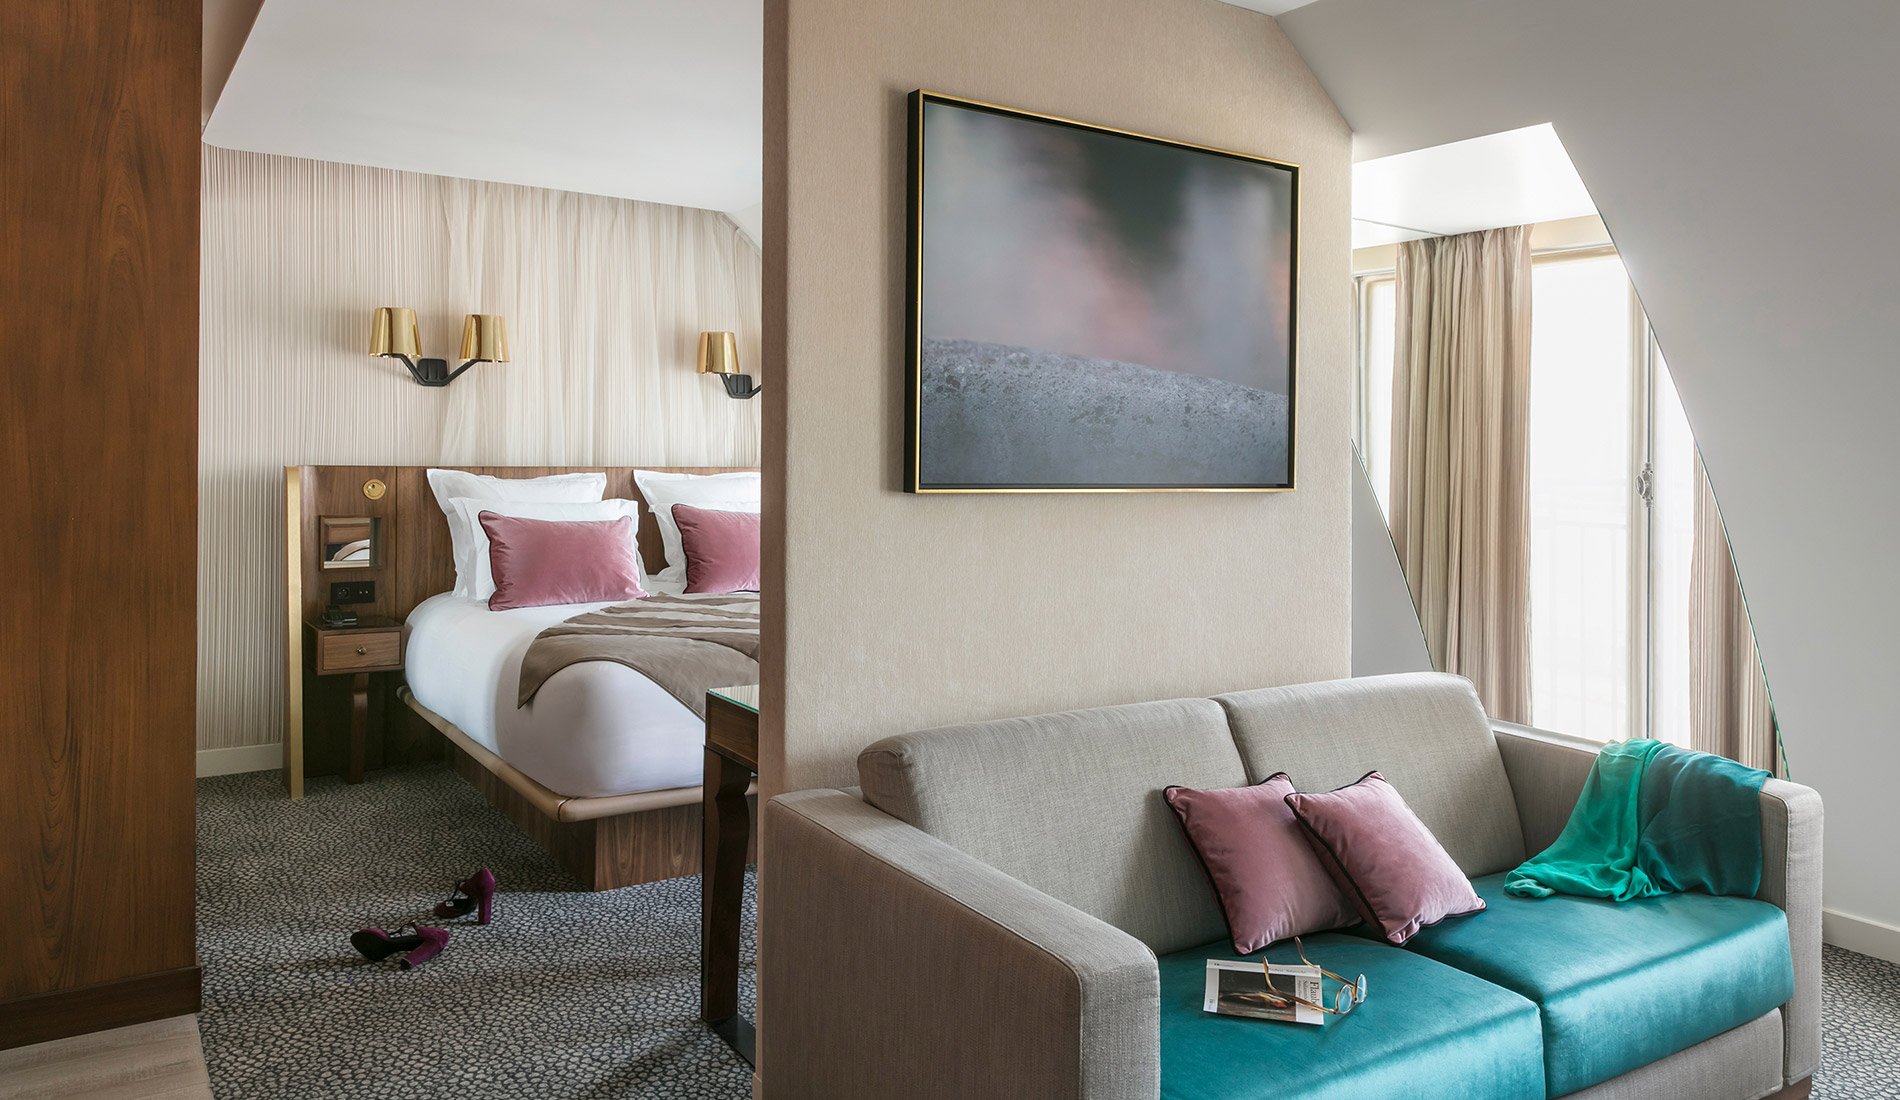 Hôtel de luxe - Maison Albar Hotels Le Pont-Neuf - 5 étoiles - suite confortable